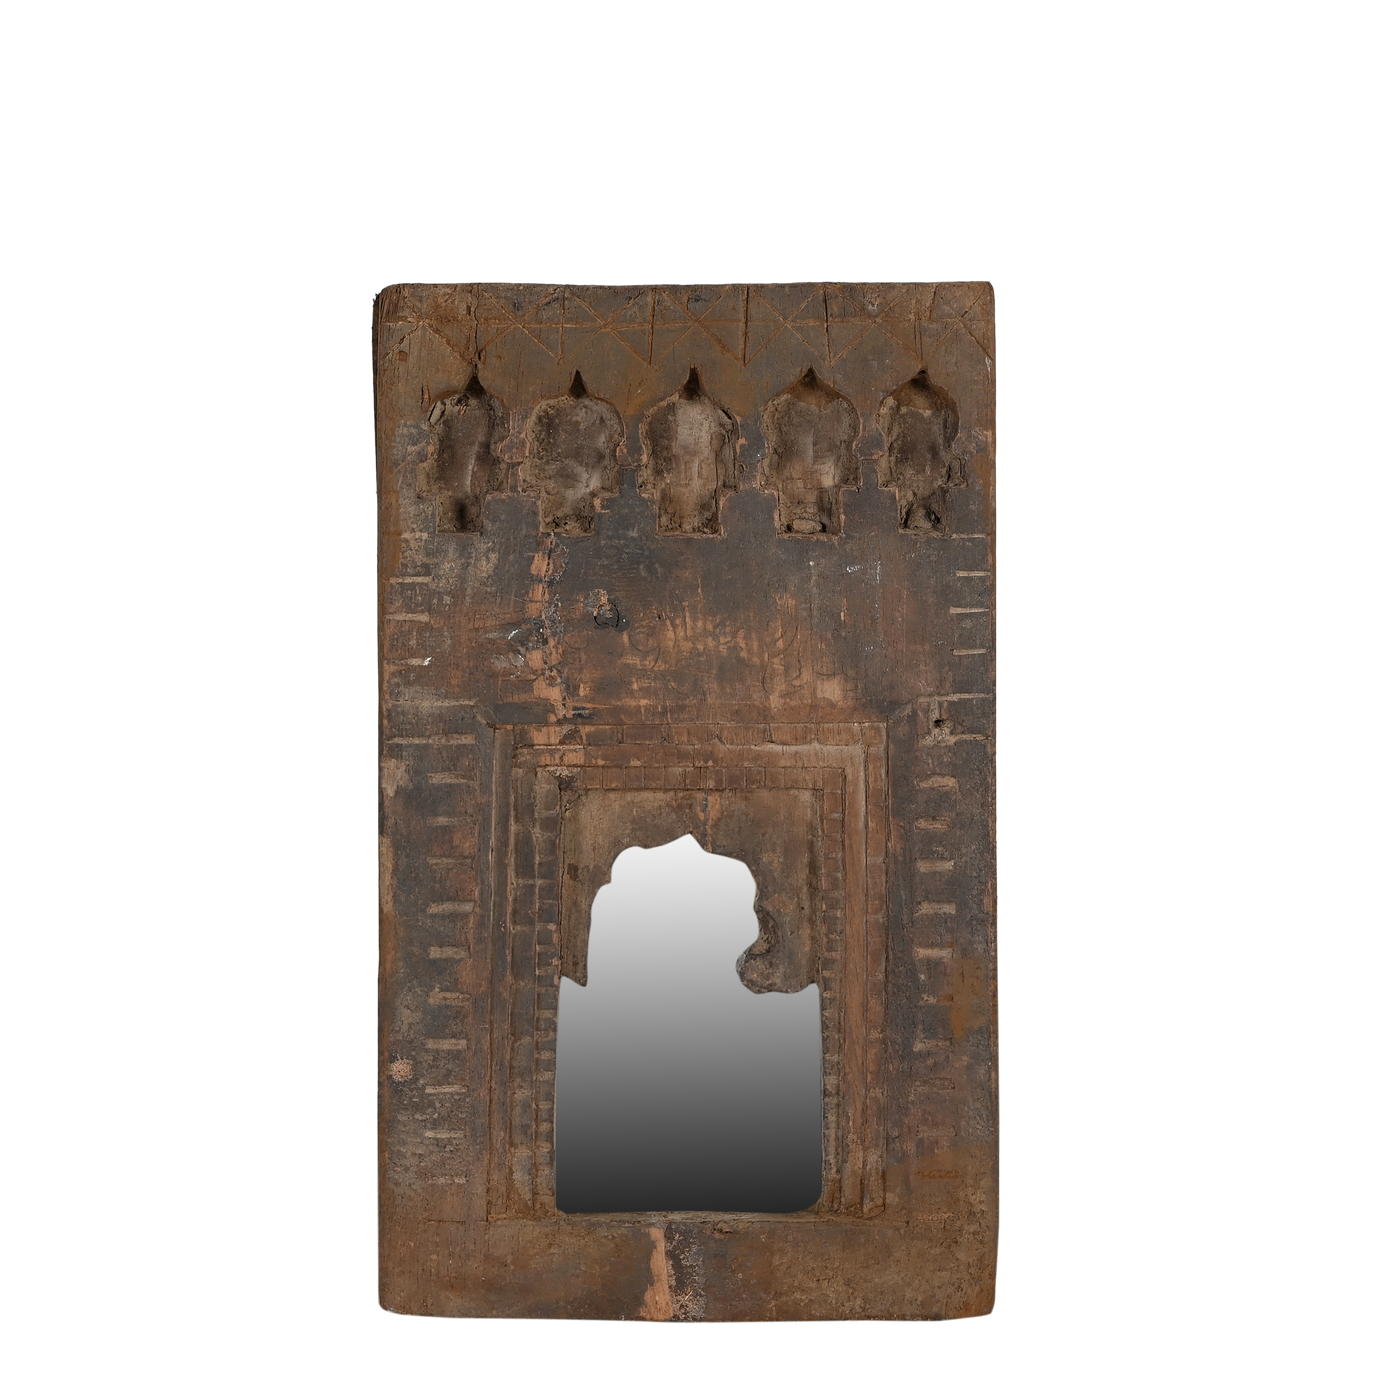 Mandir - Temple mirror n°53